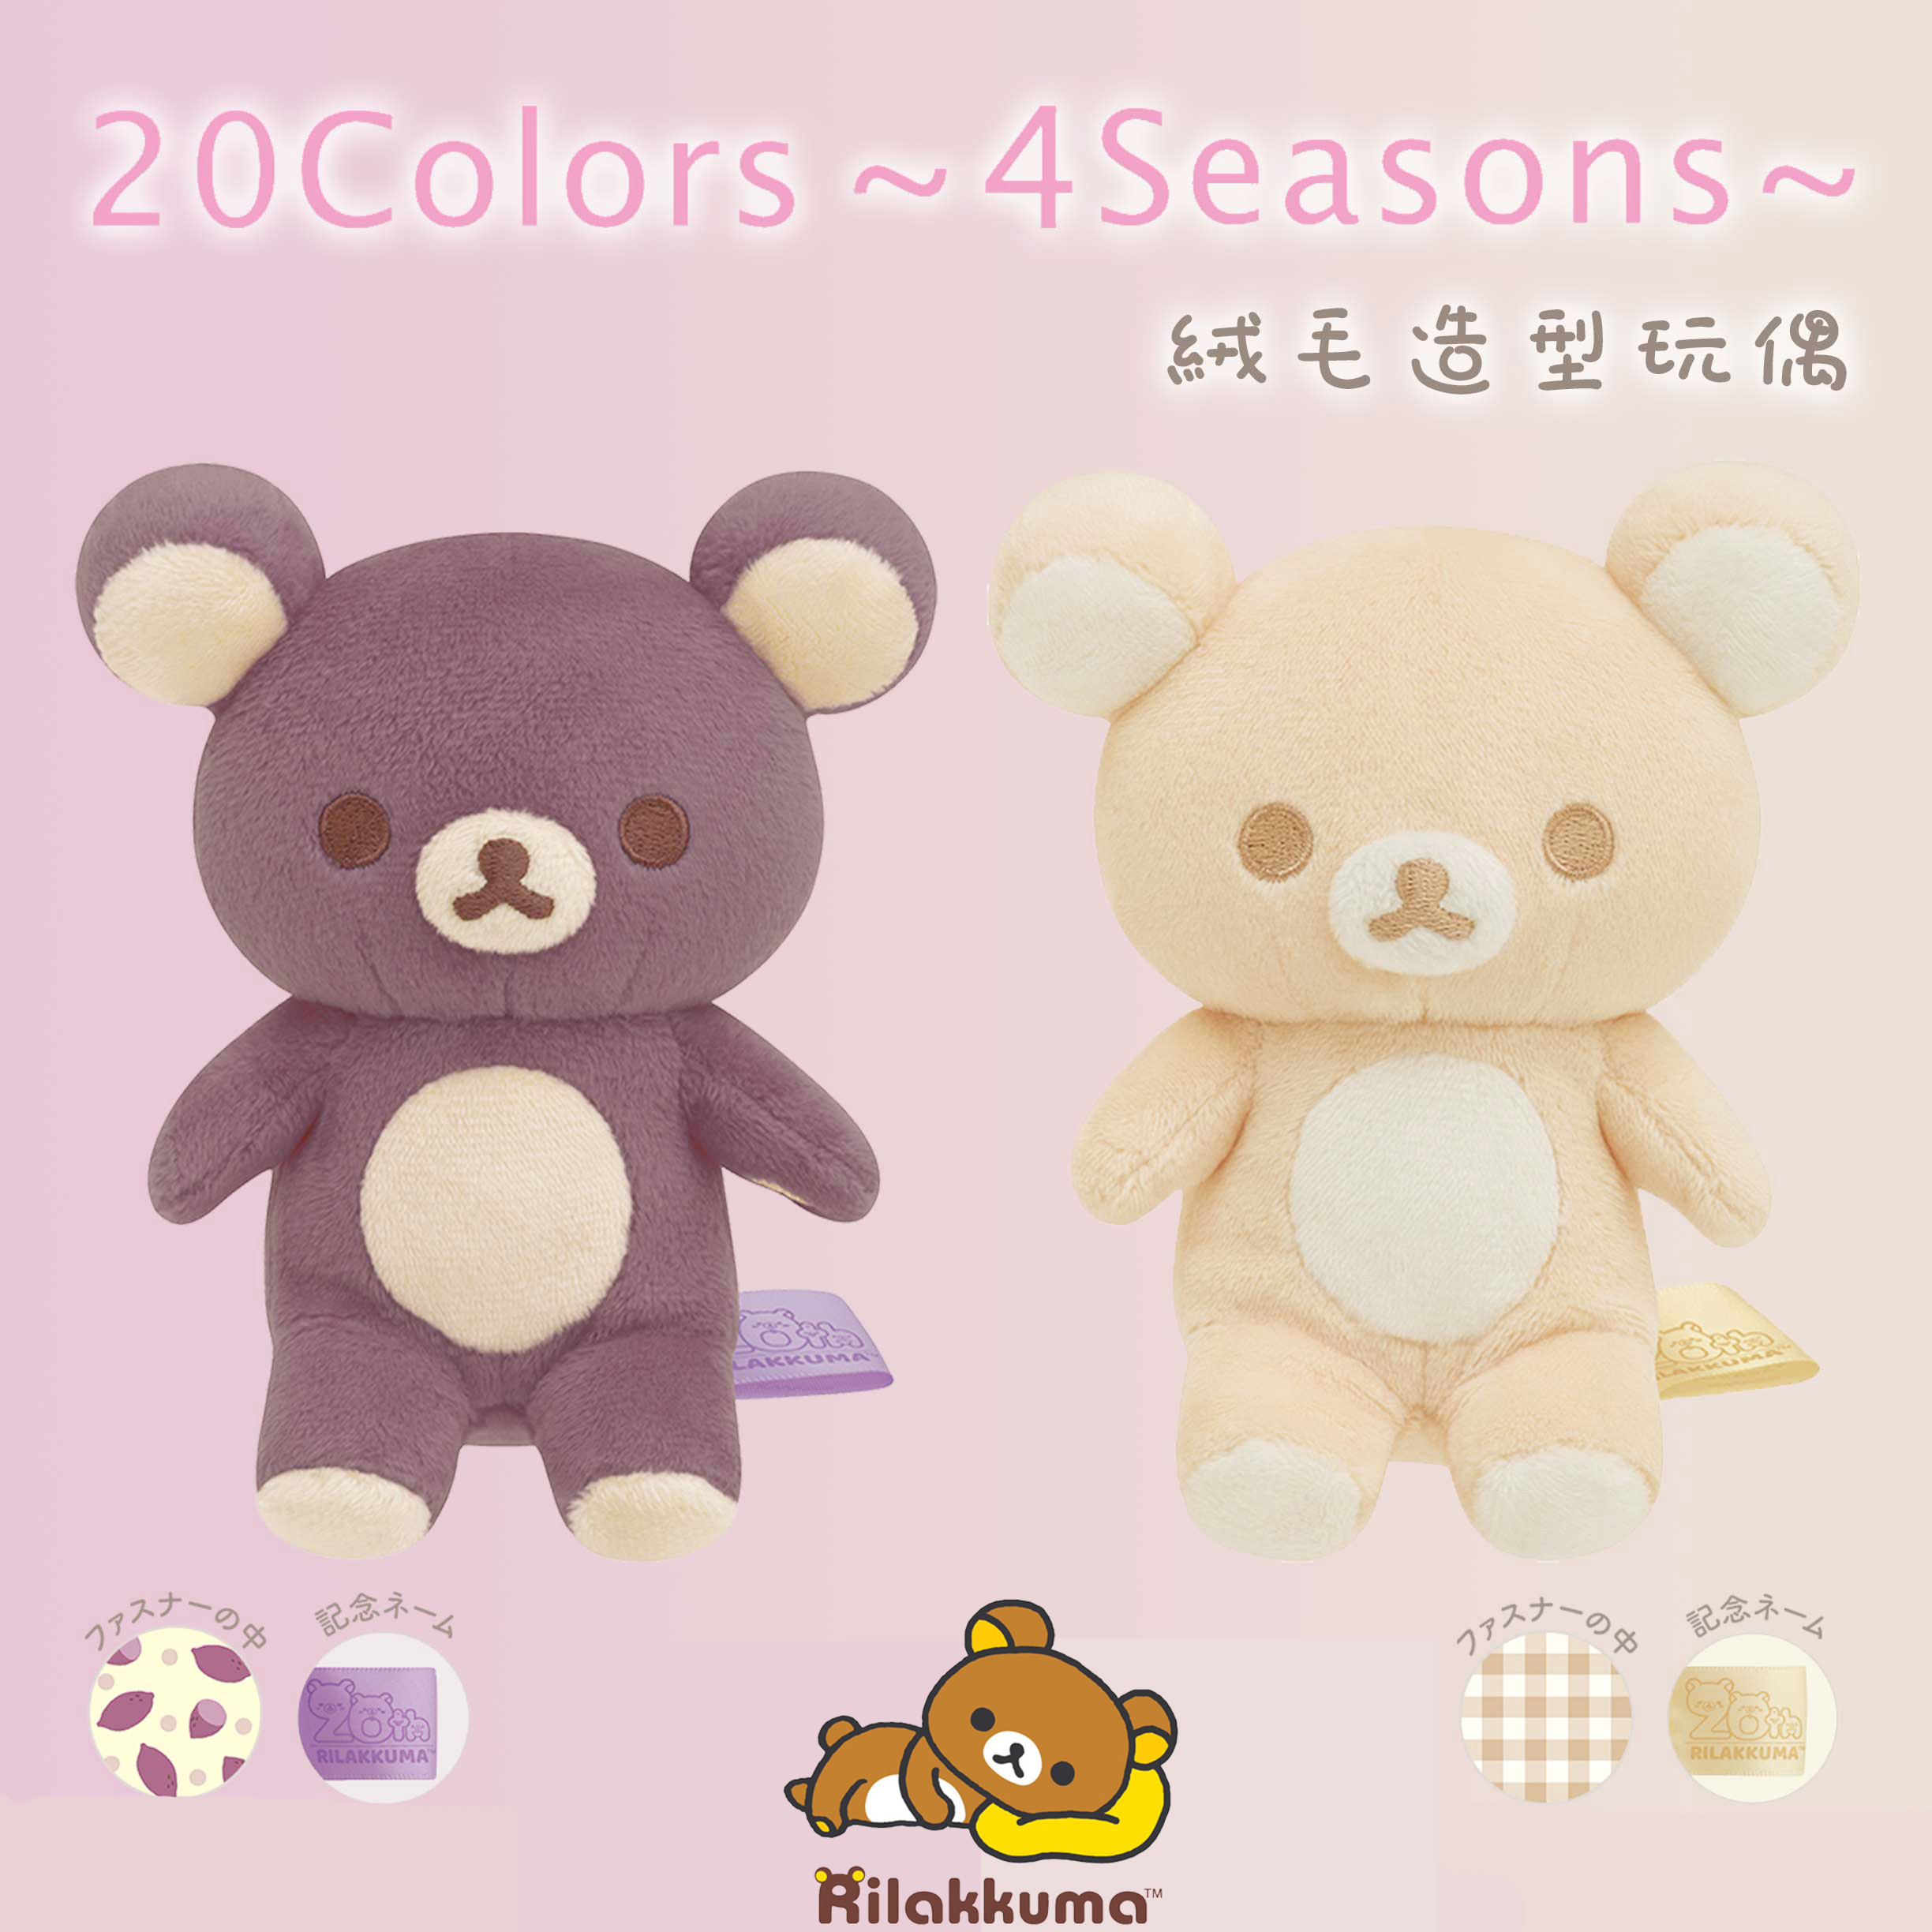 絨毛造型玩偶-拉拉熊 Rilakkuma san-x 日本進口正版授權